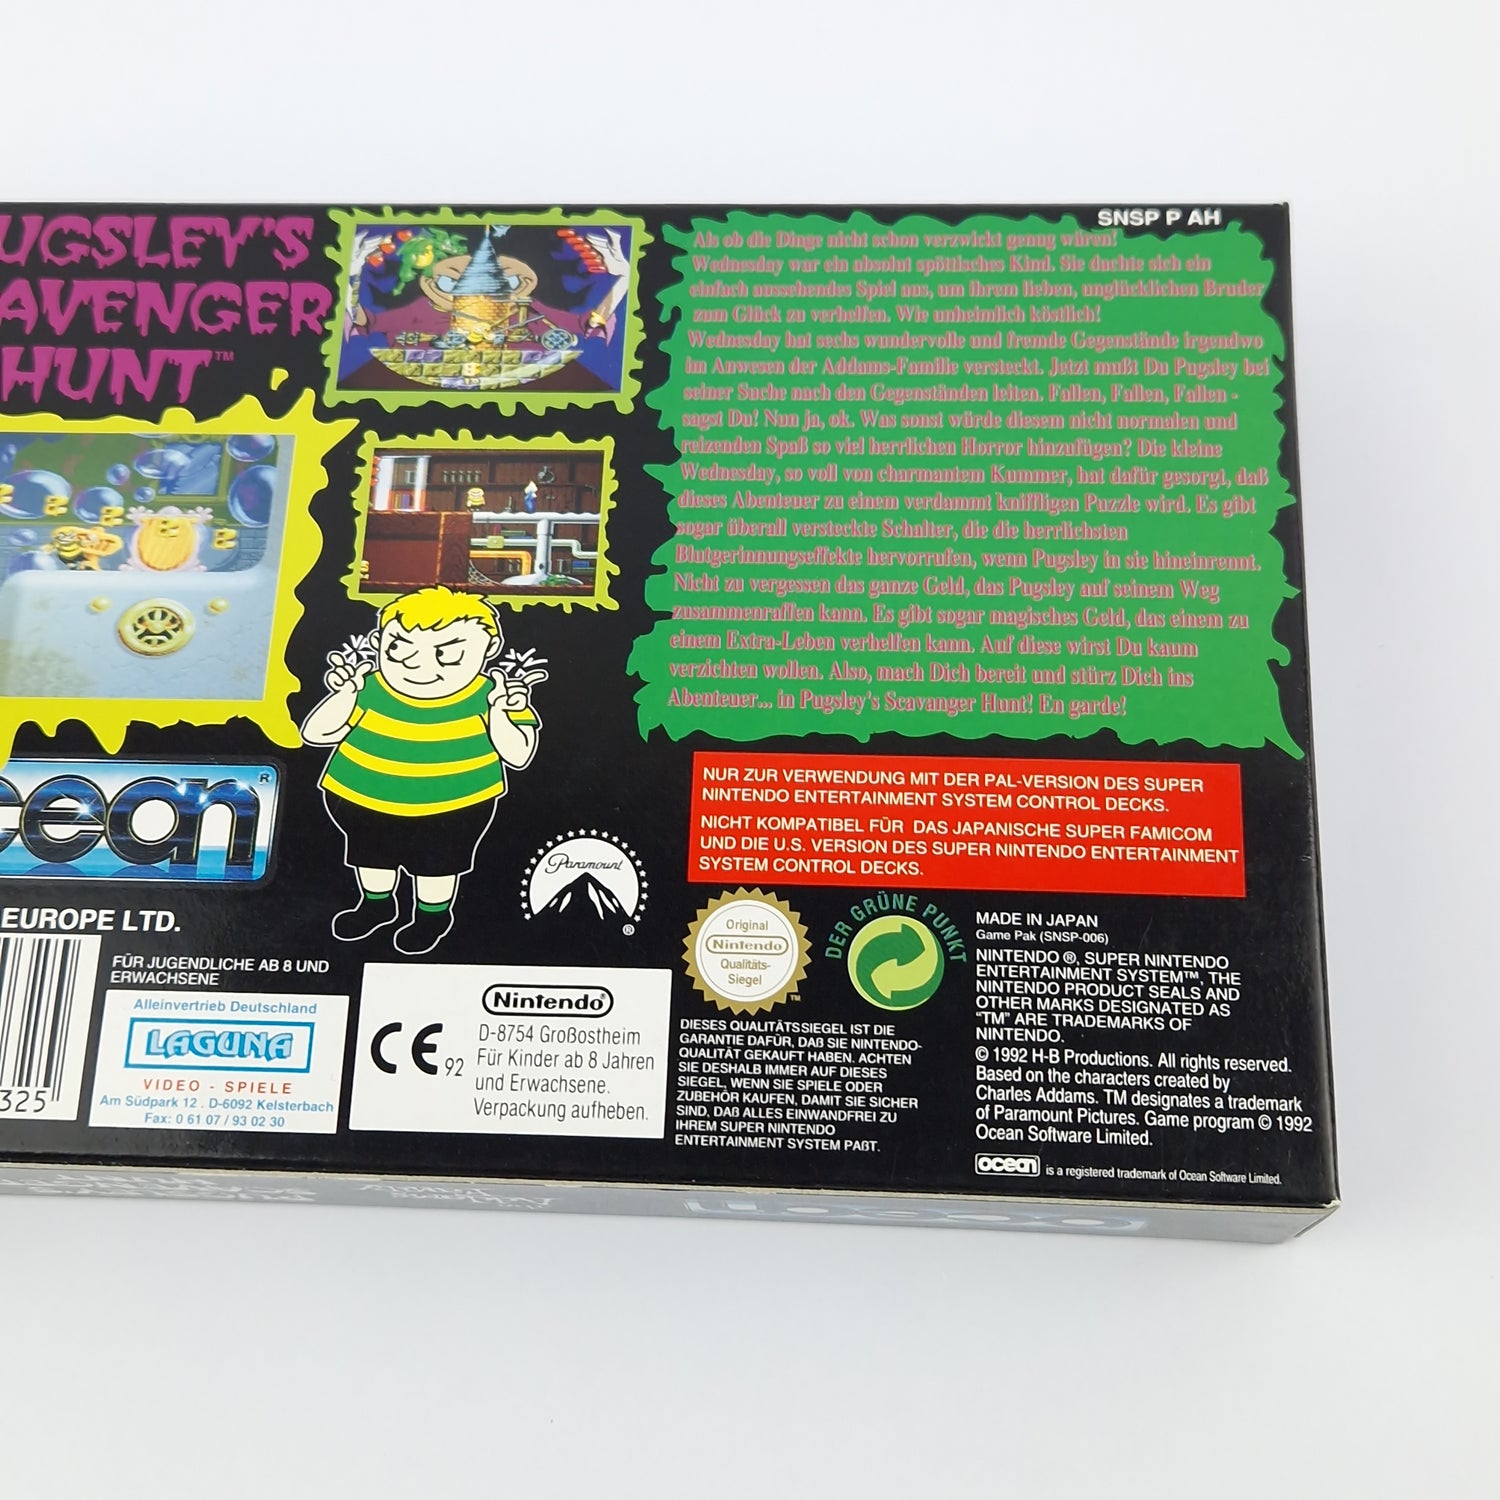 Super Nintendo Spiel : The Addams Family Pugsleys Scavenger Hunt - SNES OVP PAL